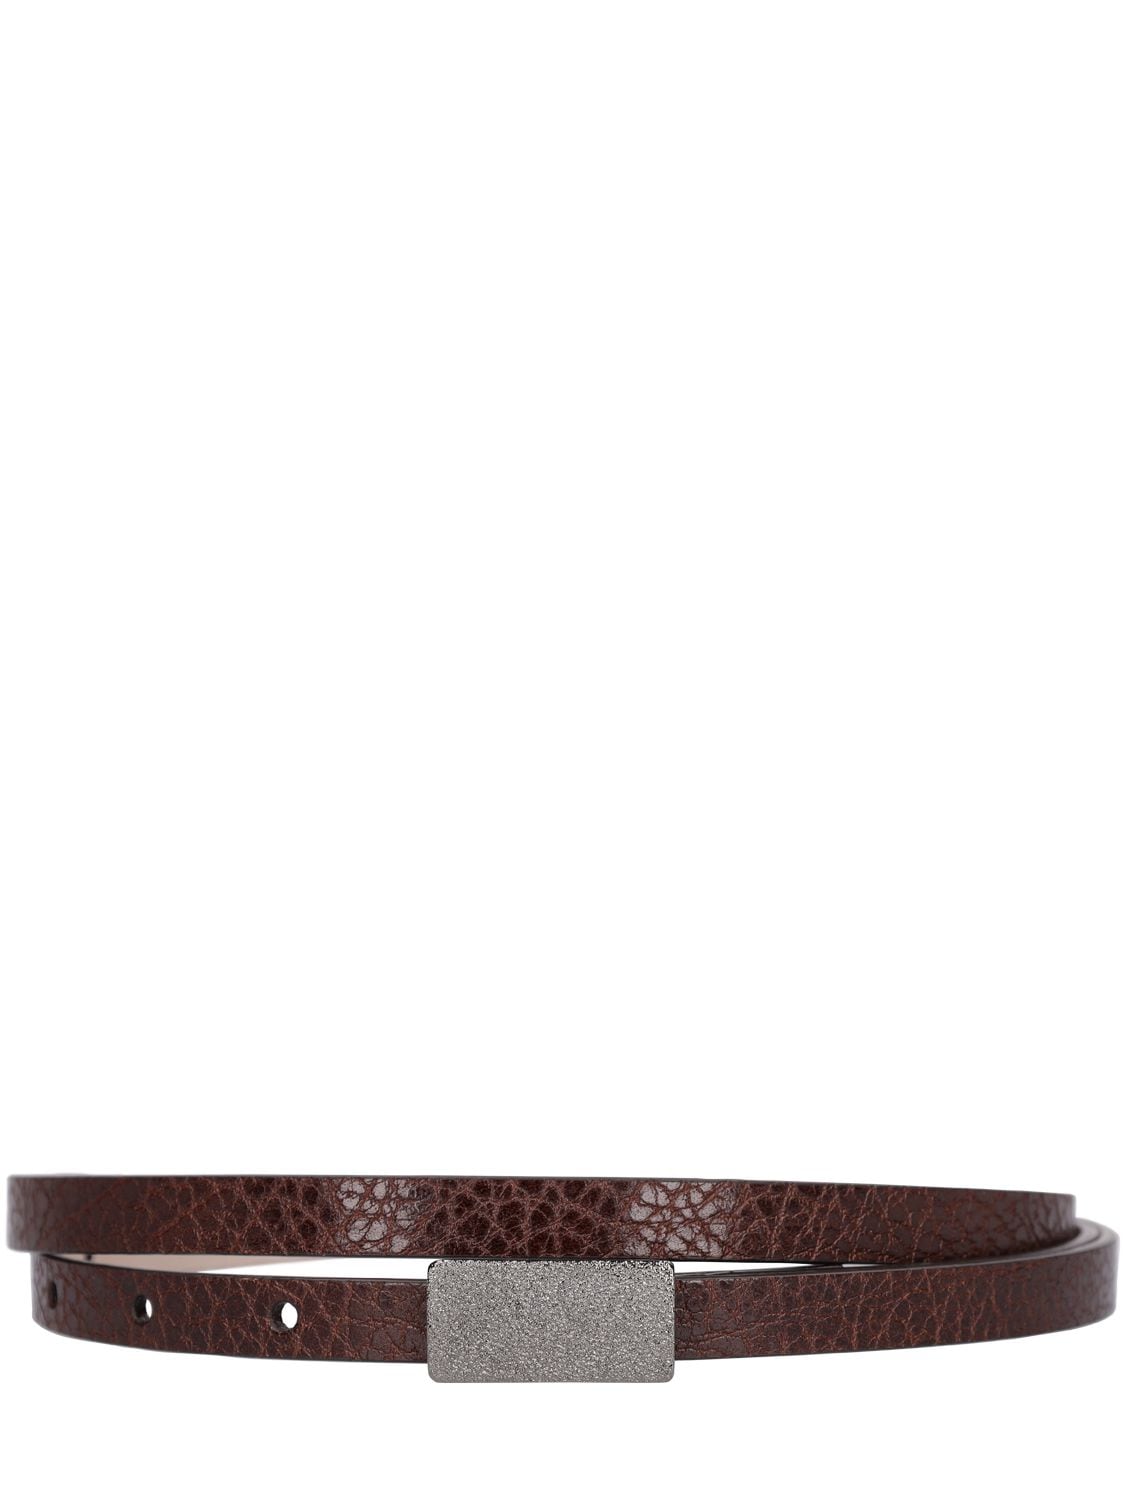 Image of 1cm Embellished Shiny Leather Belt